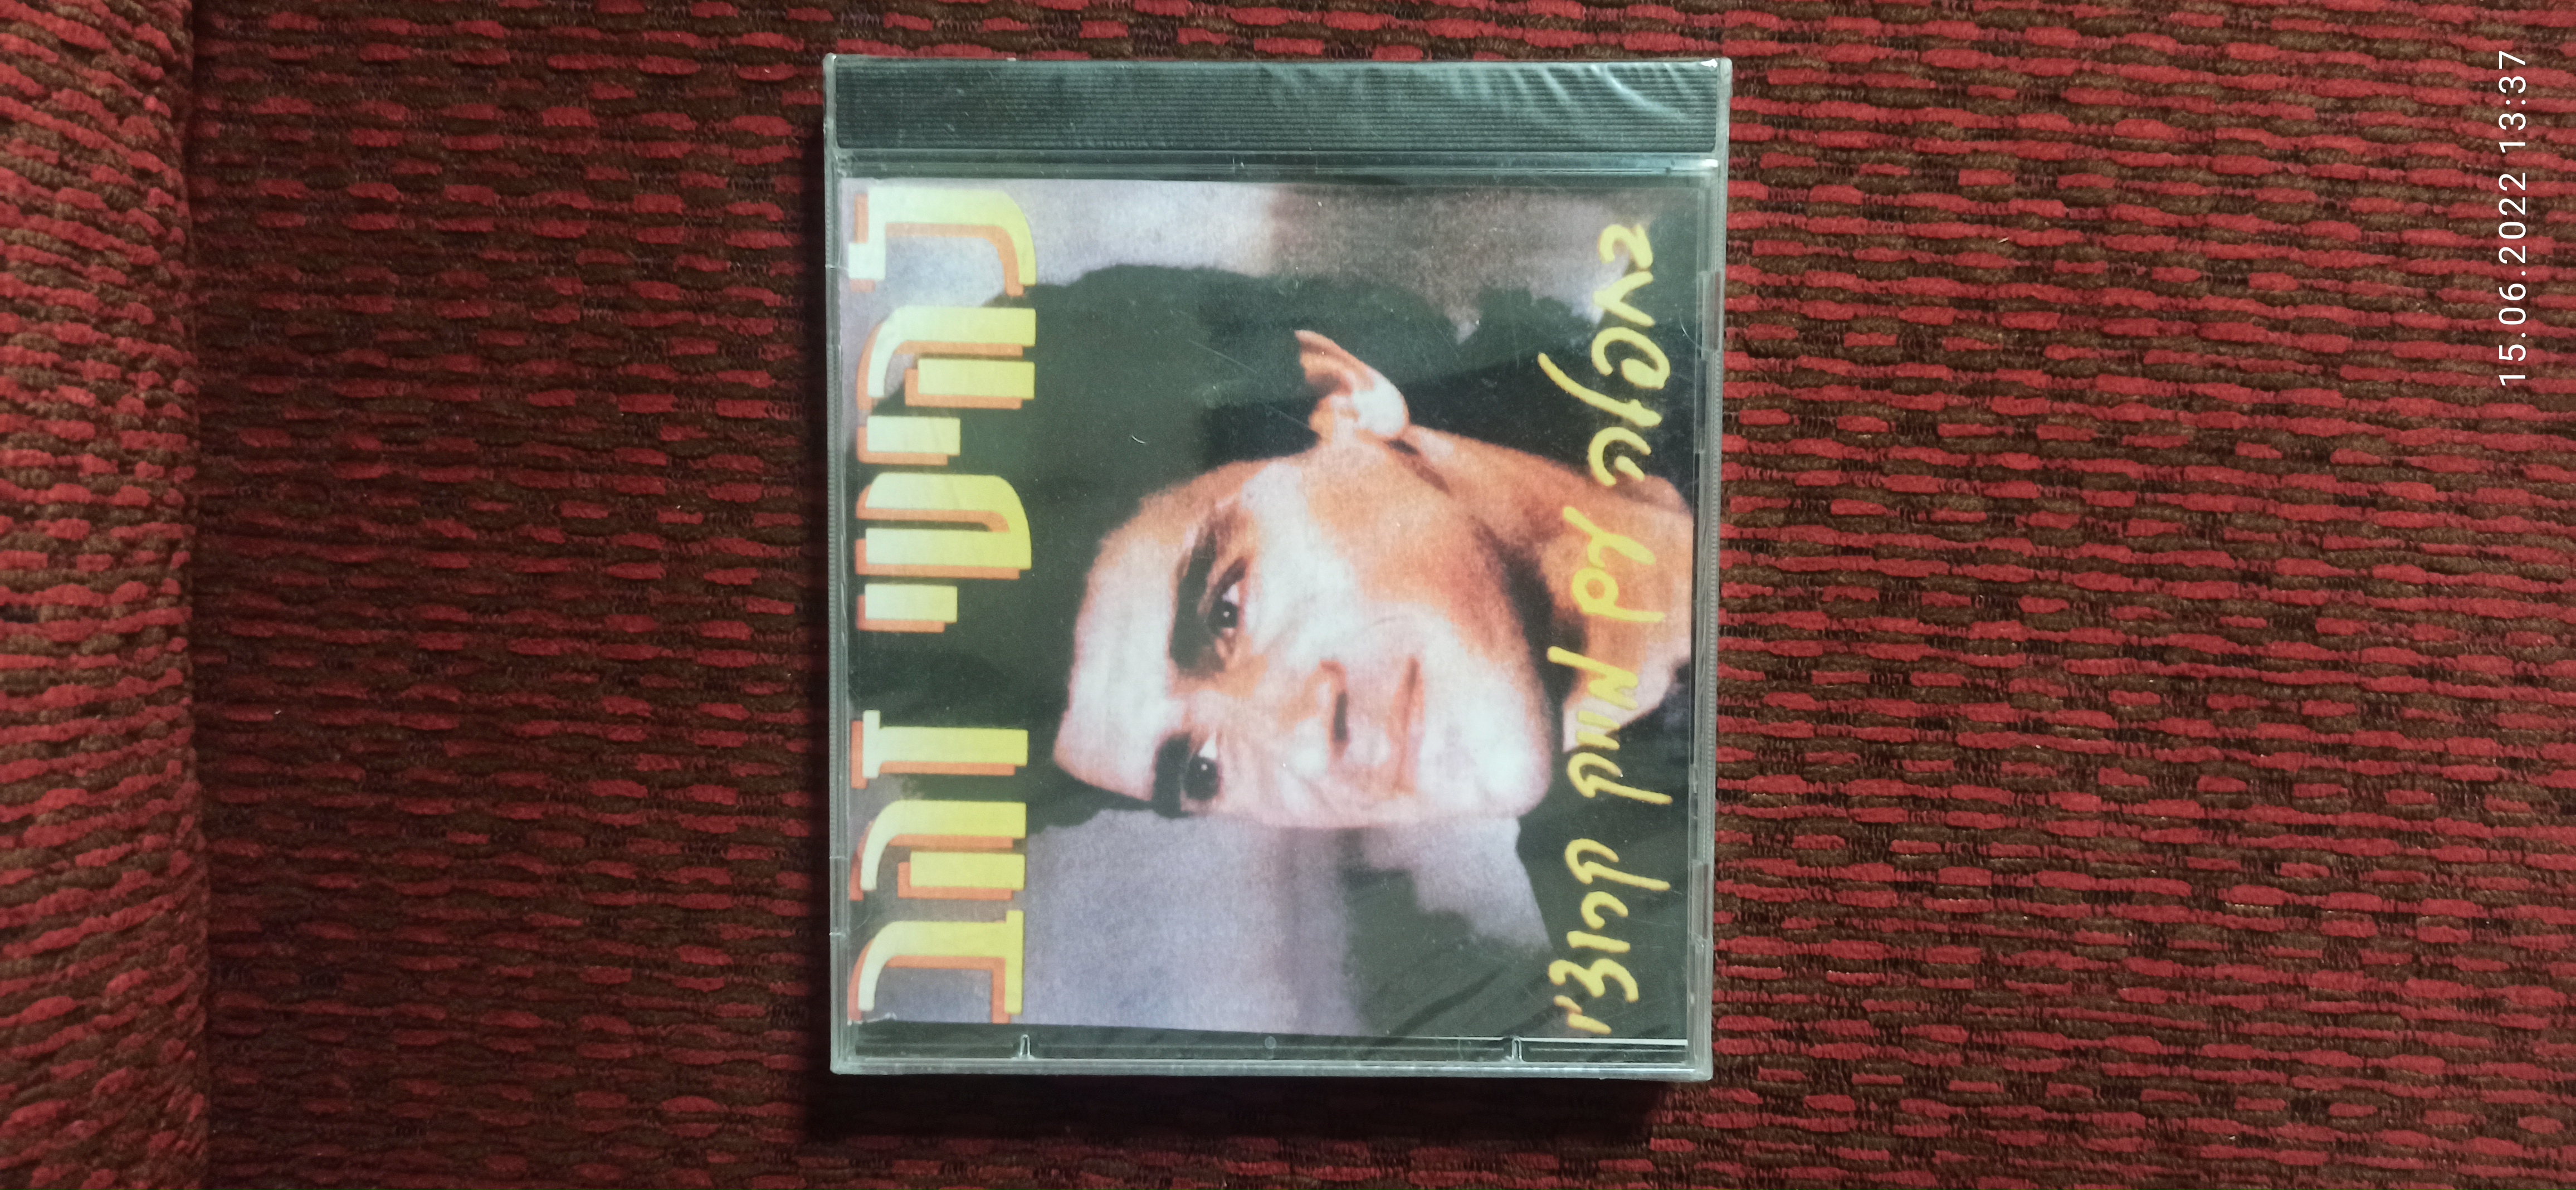 תמונה 1 ,דיסק של מייק קרוצי  למכירה ביבנה מוסיקה וסרטים  cd